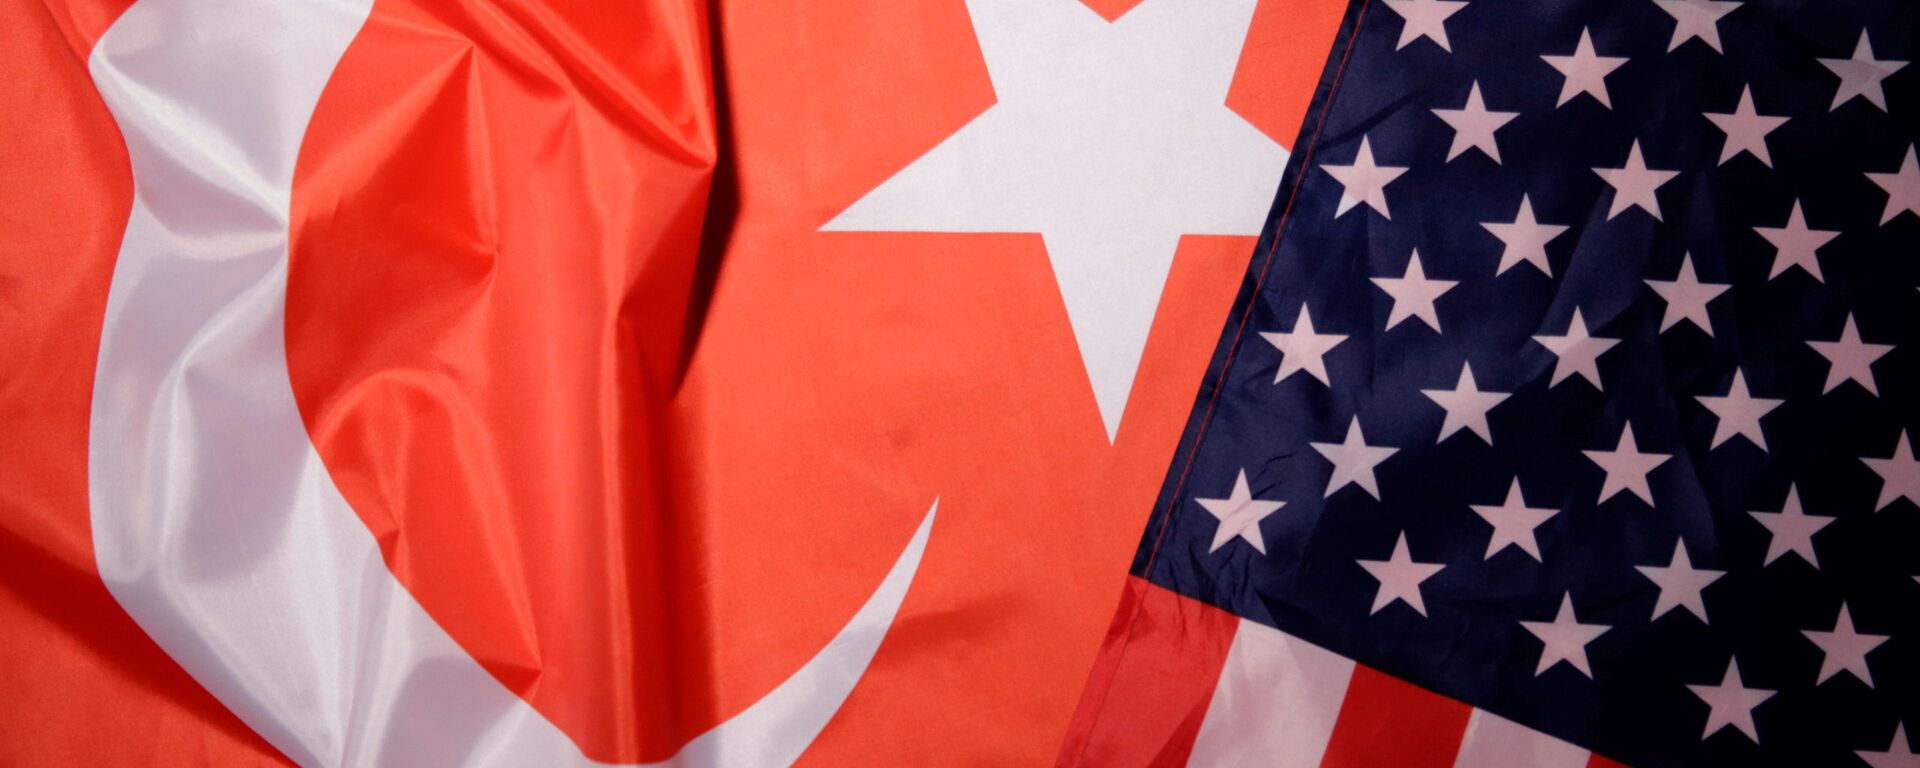 ABD ve Türkiye bayrakları - Sputnik Türkiye, 1920, 03.03.2021